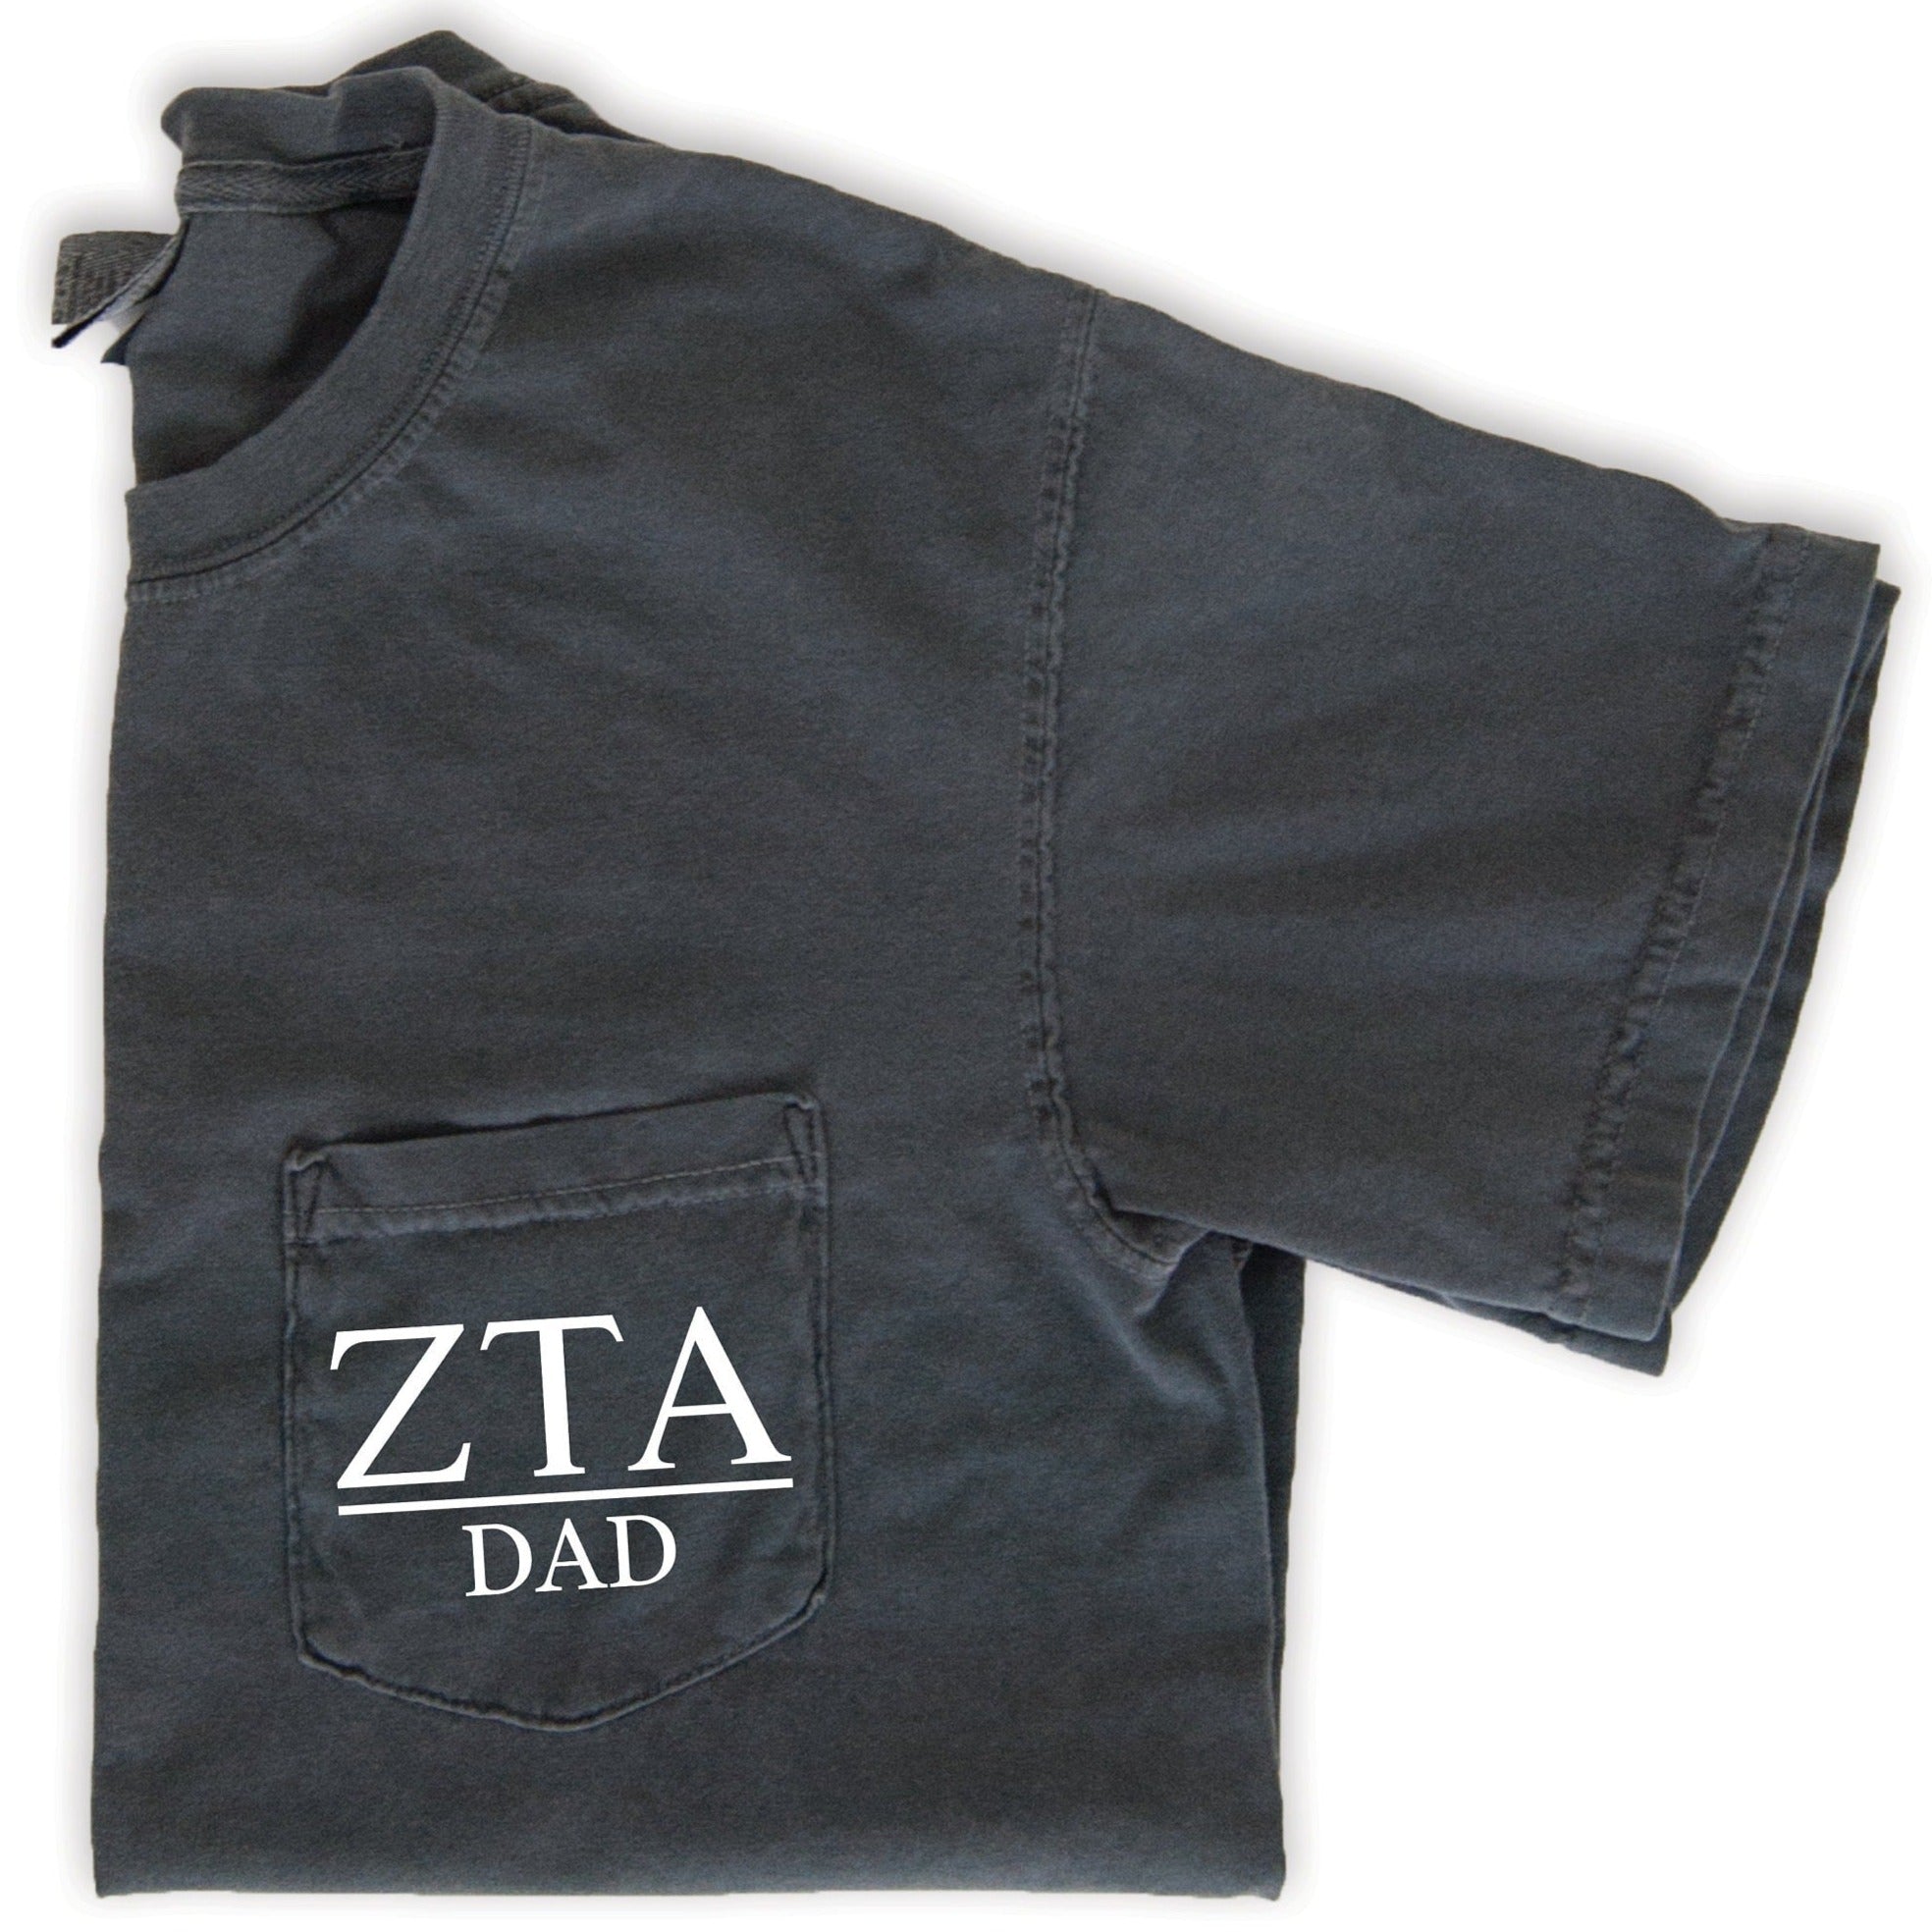 Zeta Tau Alpha Dad T-Shirt - Grey - Go Greek Chic